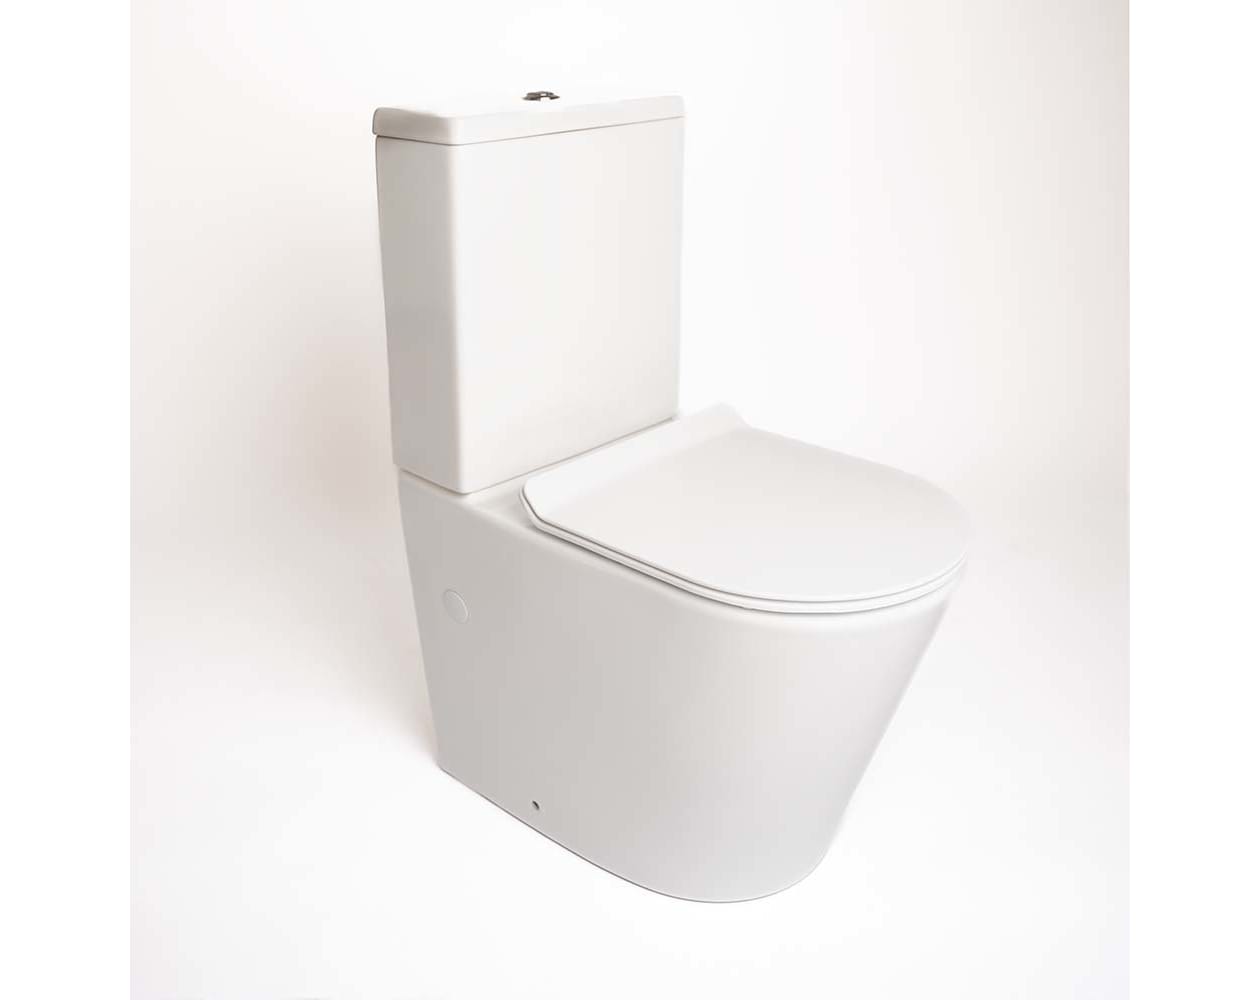 Asiento tapa wc universal fabricado en duroplast blanco caída libre